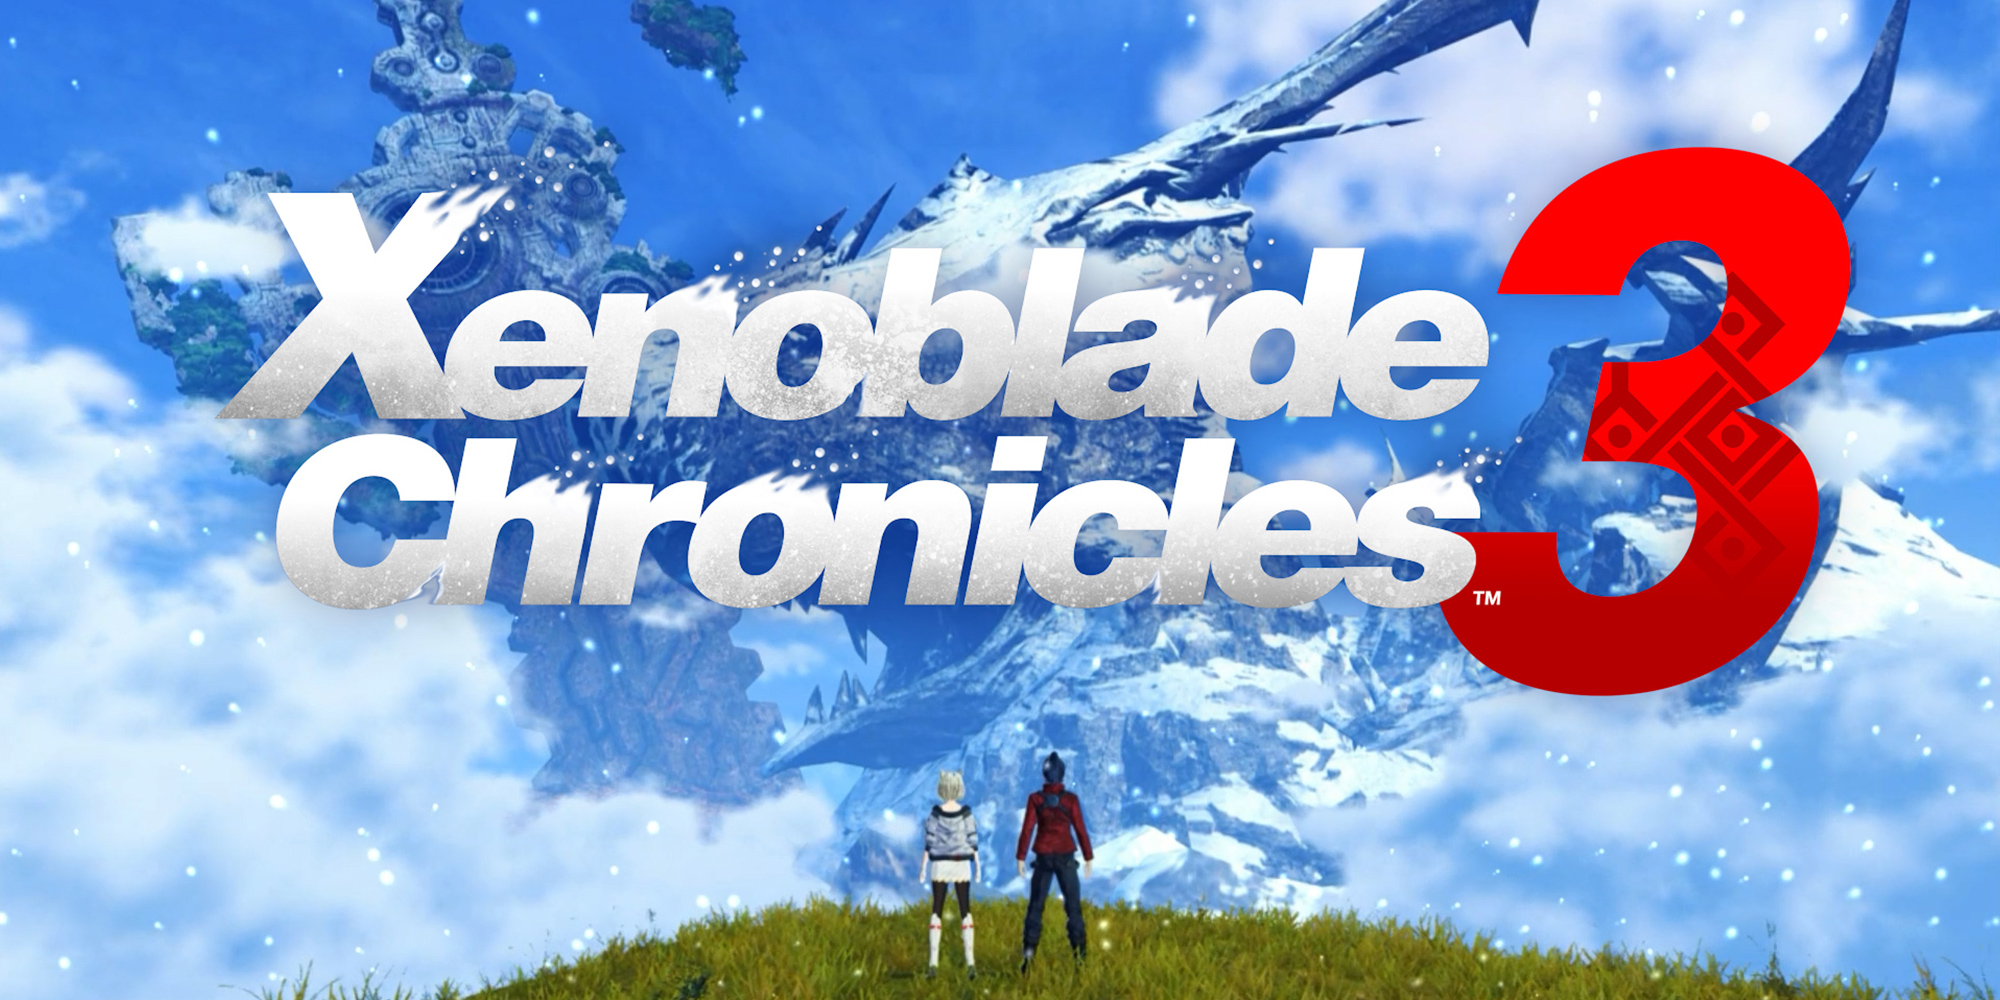 Inscrivez-vous pour savoir quand l'Édition Collector de Xenoblade Chronicles 3 sera disponible !